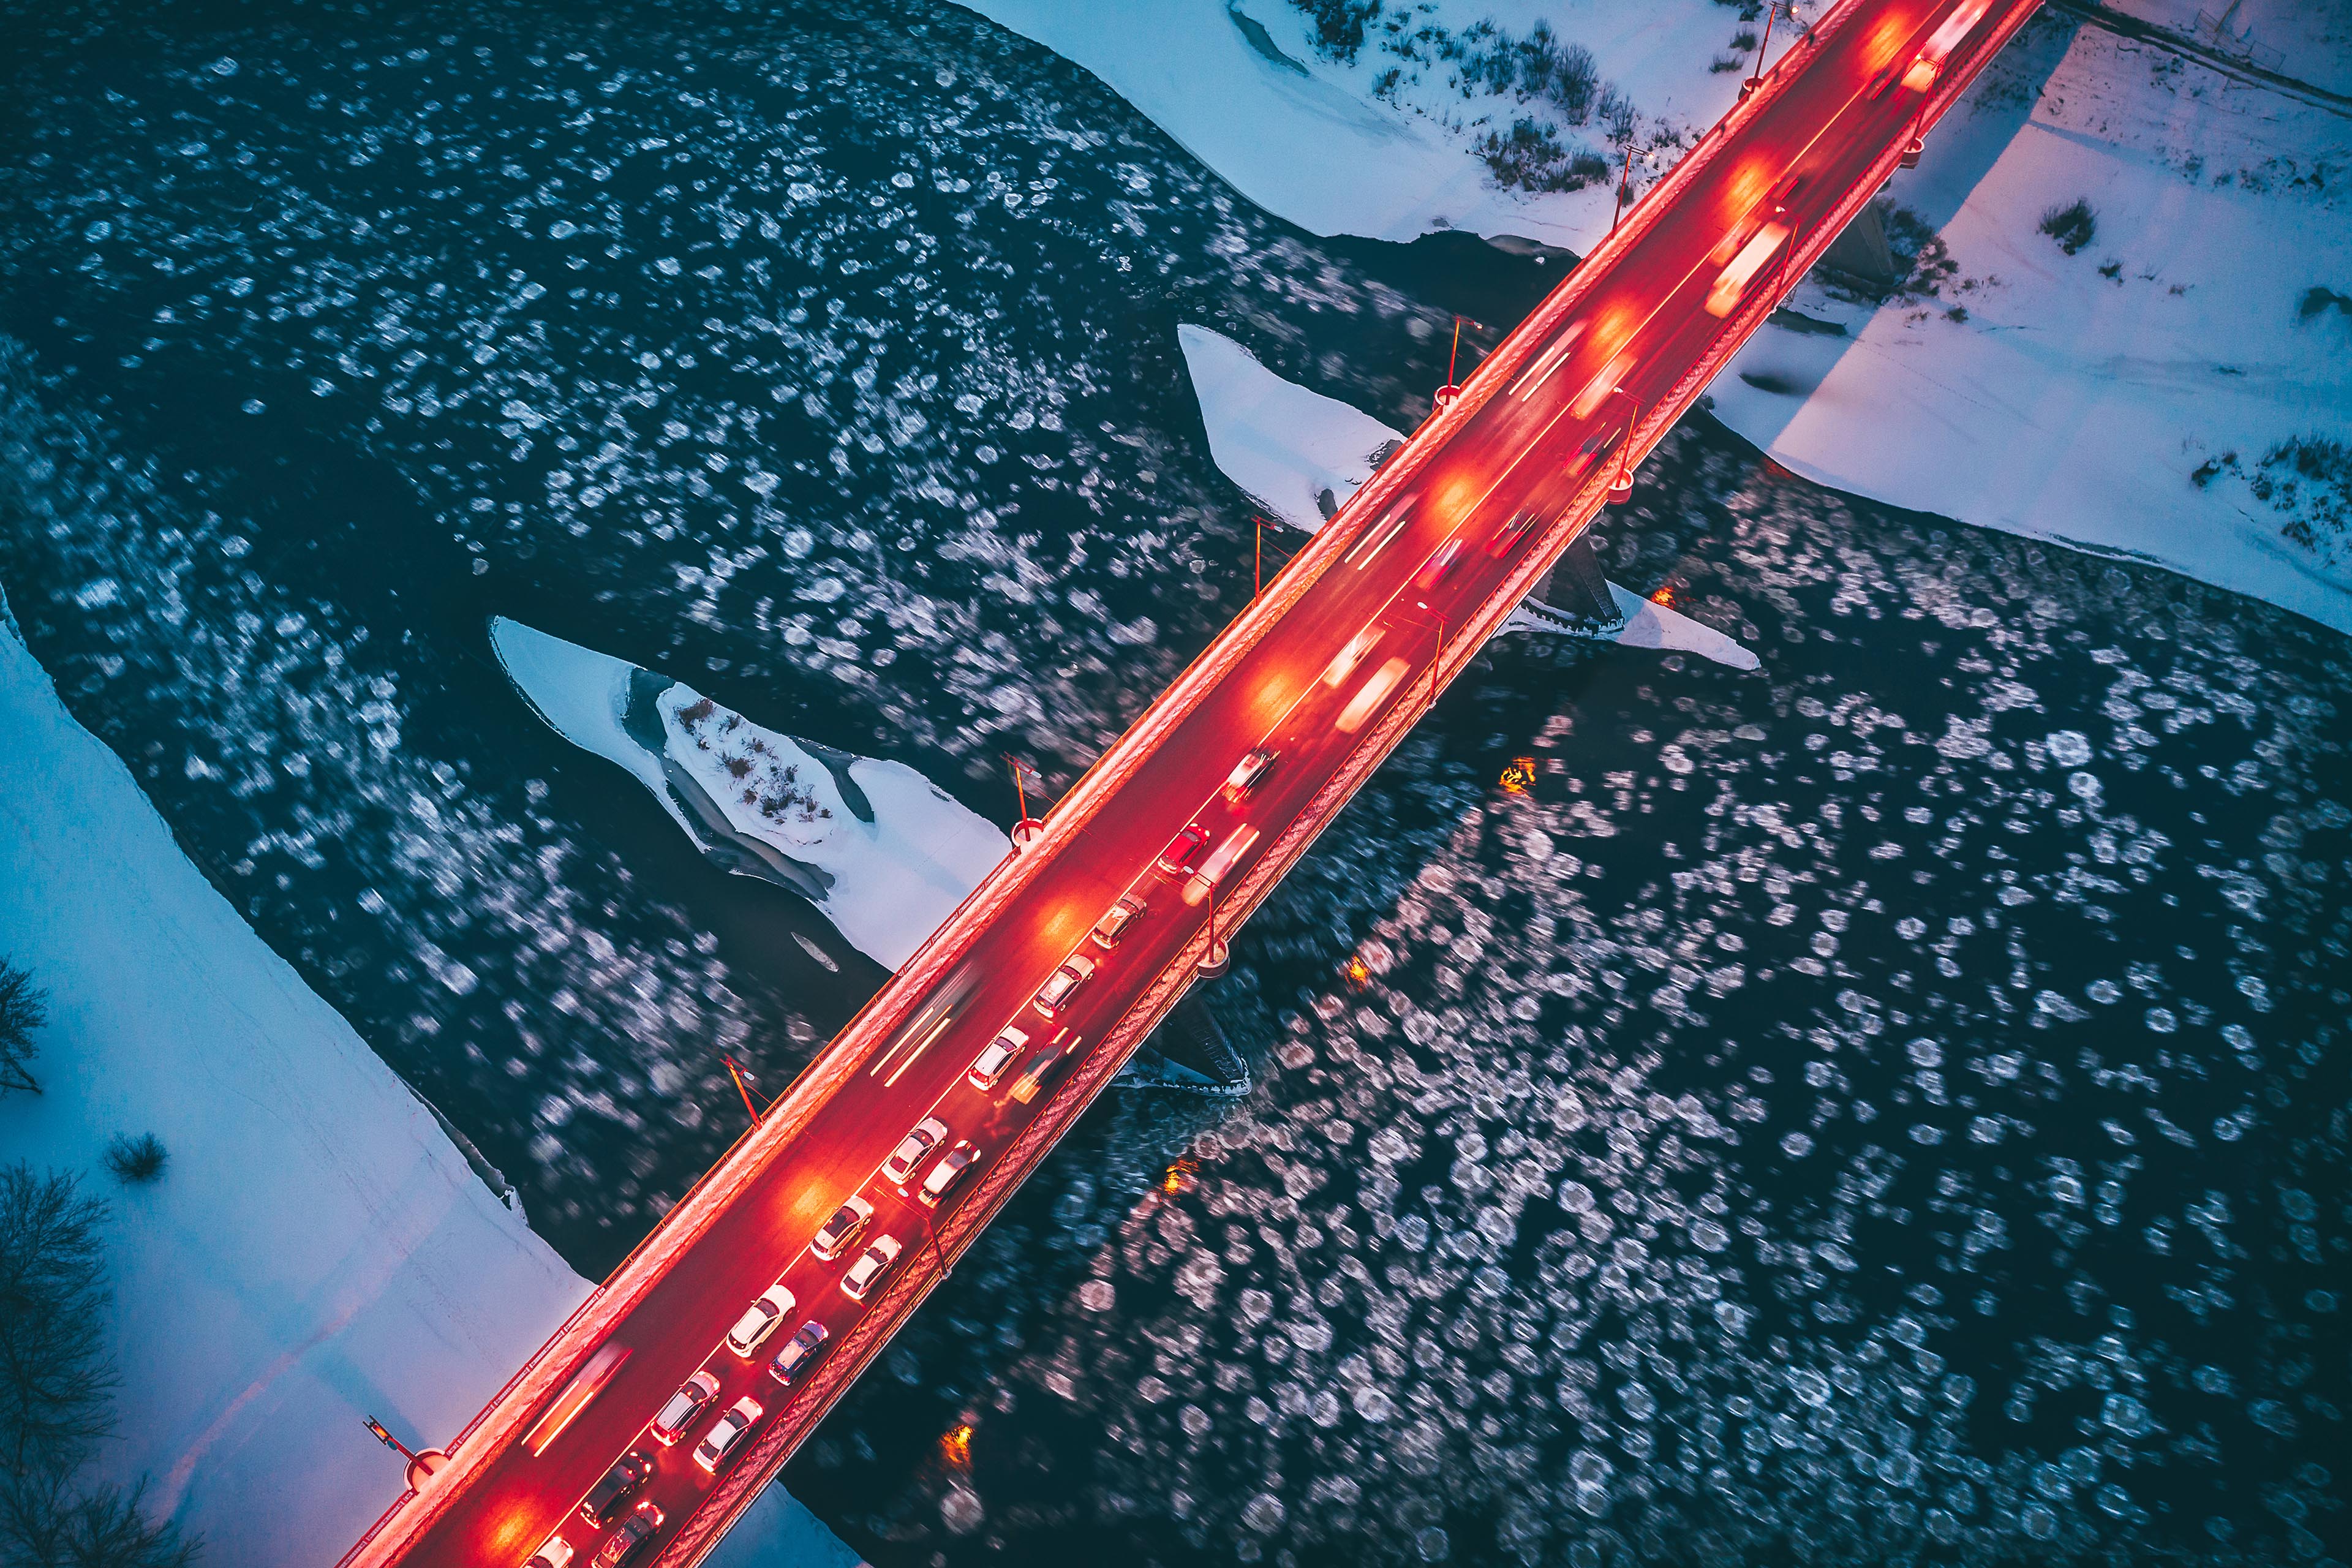 Des reflets de phares de voitures sur un pont, la nuit, au‑dessus d’une rivière gelée